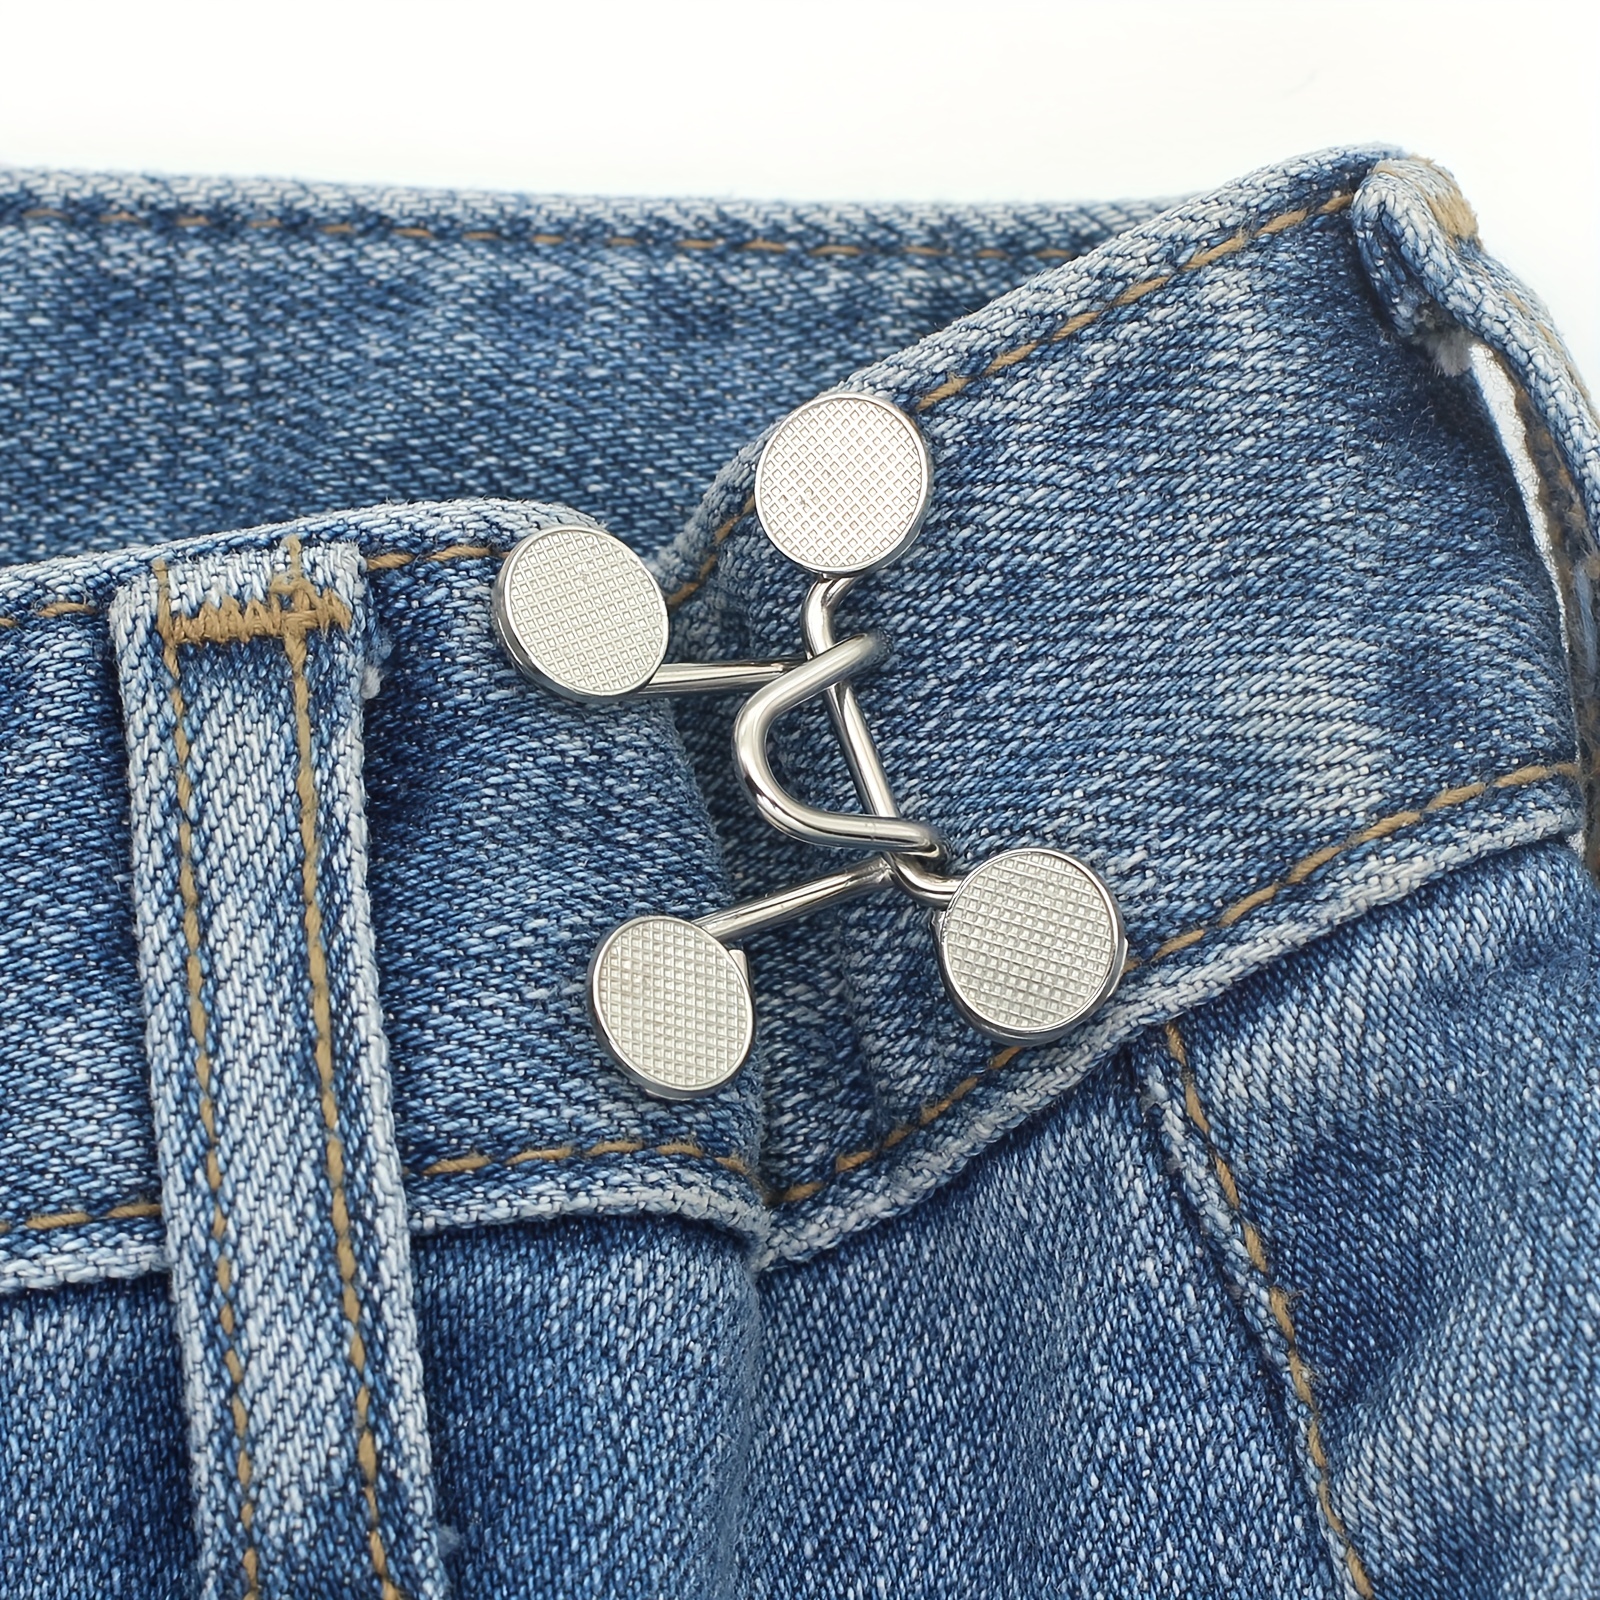 Jeans avec bouton pression invisible pour ceinture, artefact de